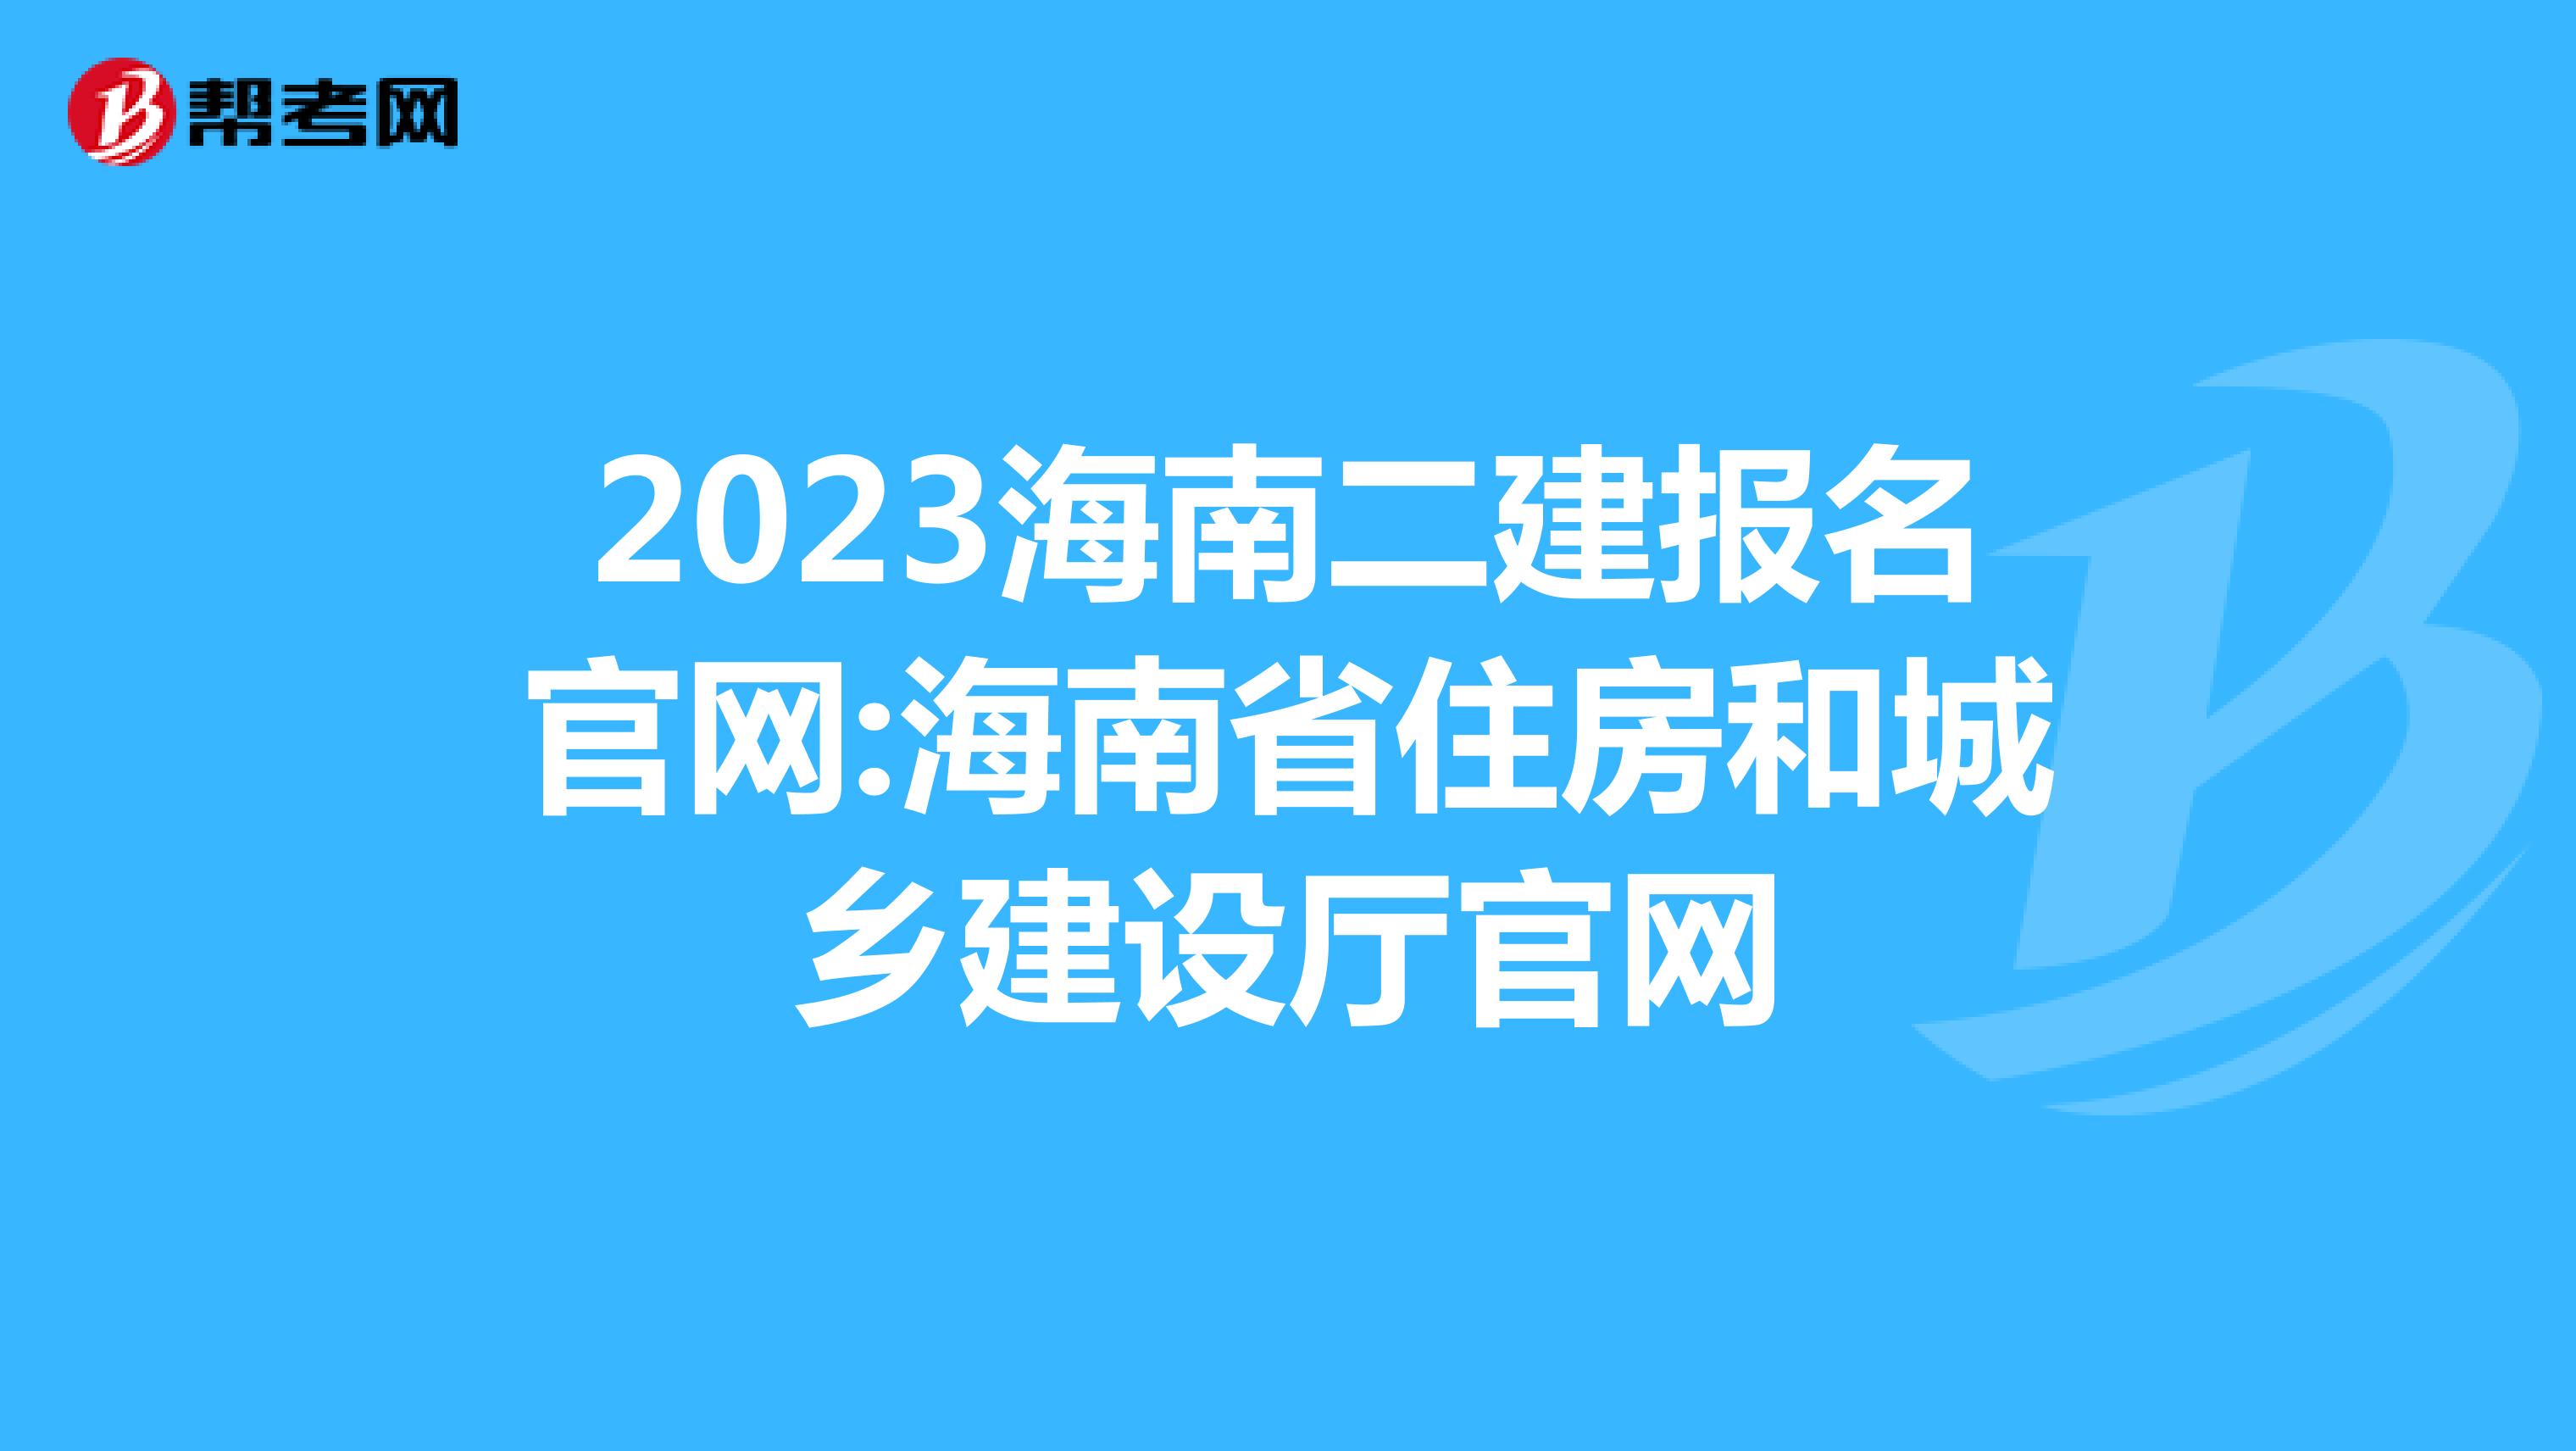 2023海南二建报名官网:海南省住房和城乡建设厅官网